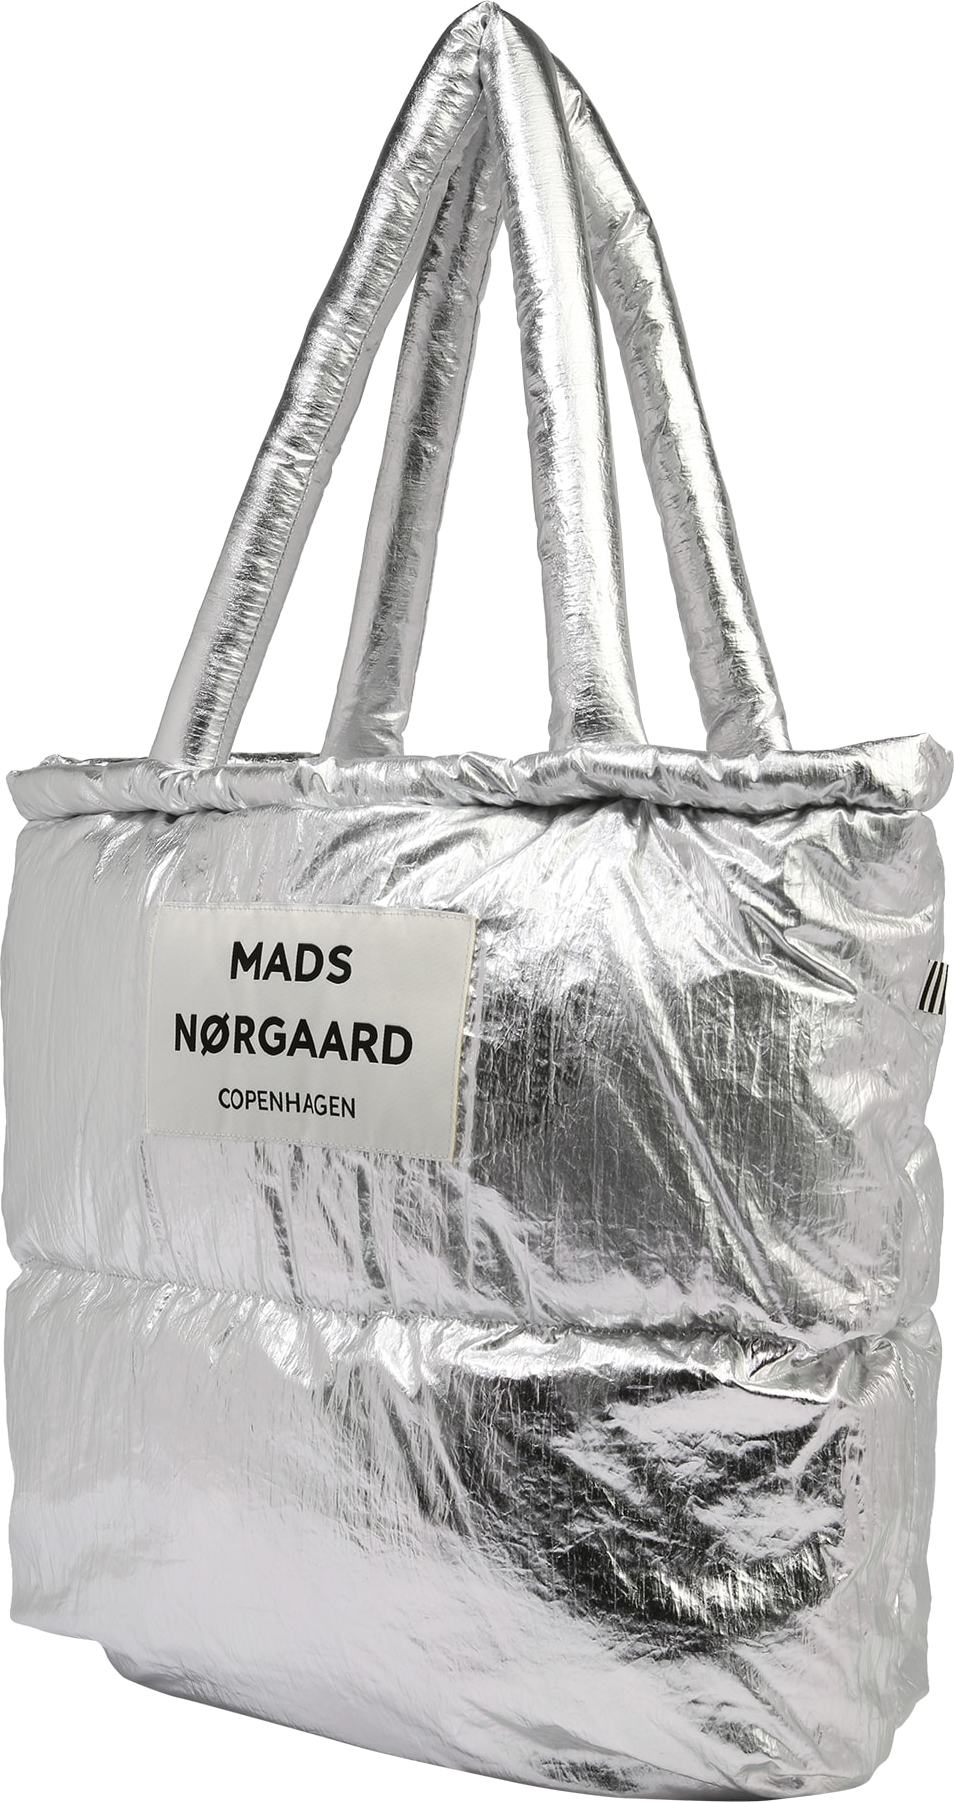 MADS NORGAARD COPENHAGEN Nákupní taška stříbrná